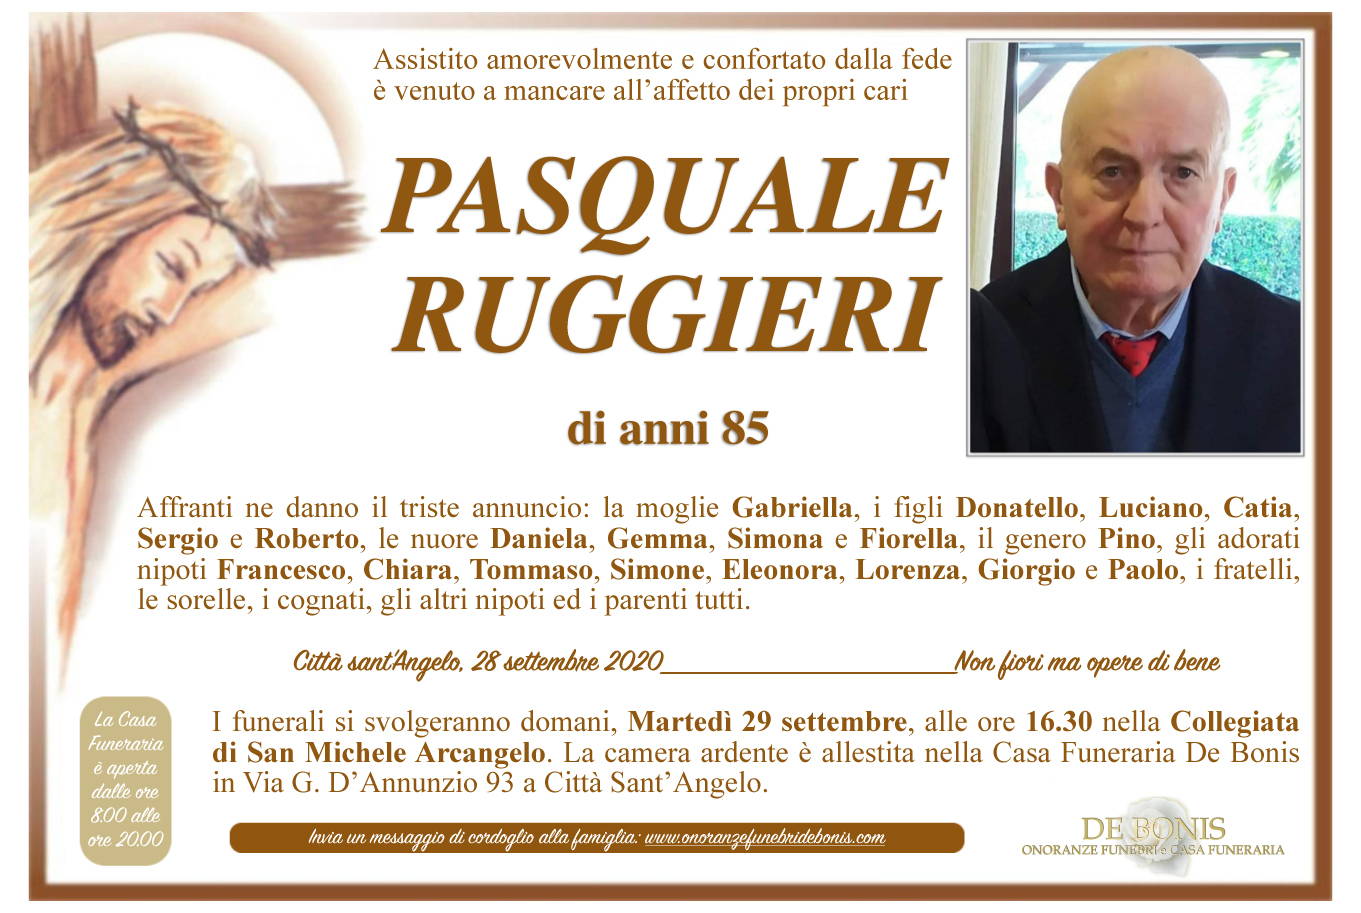 Pasquale Ruggieri